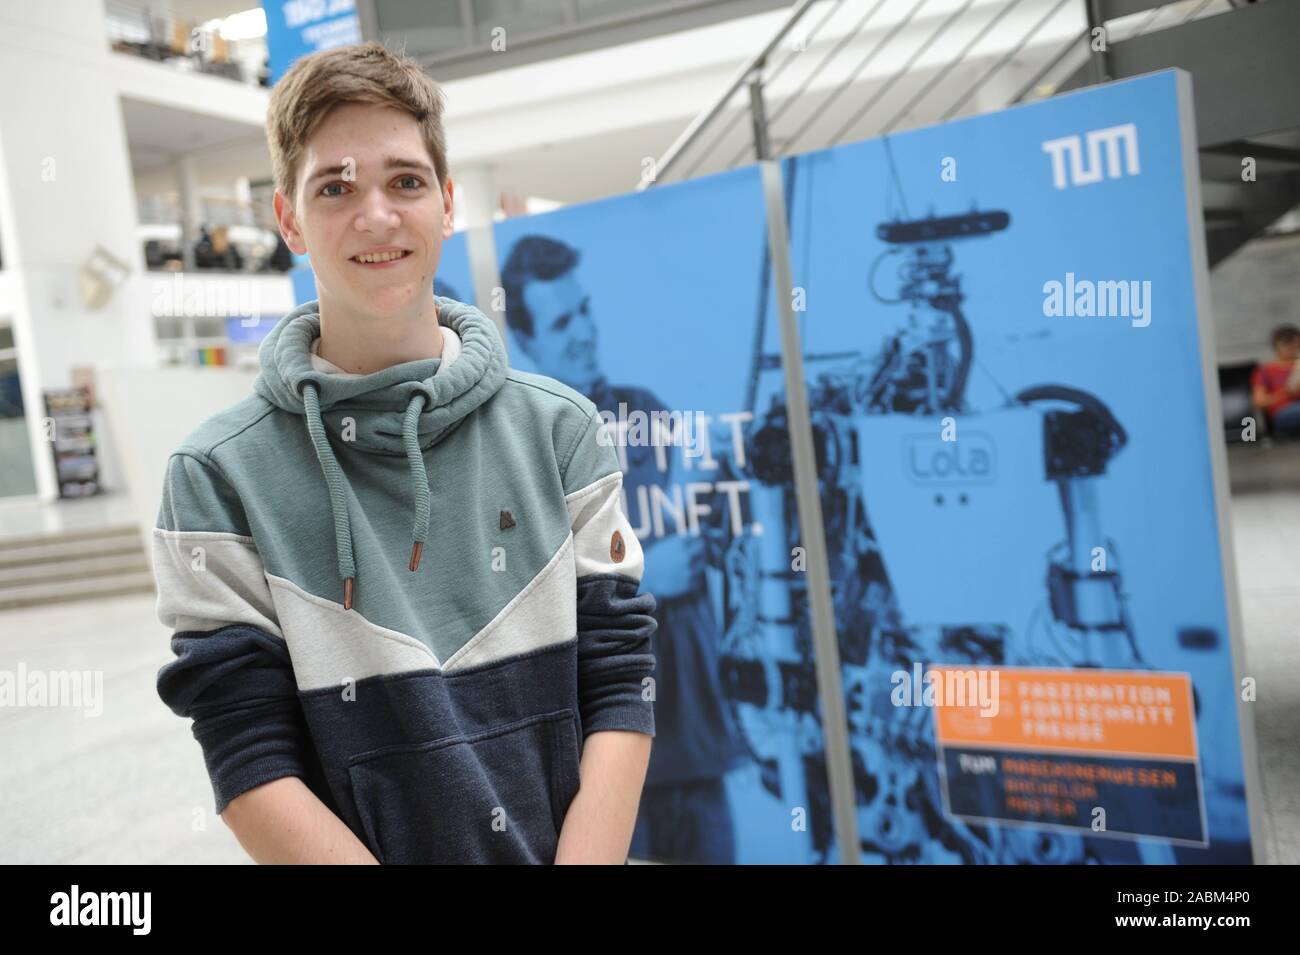 Nils Wagner, étudiant en physique à l'Université technique de Munich (TUM) à Garching, s'est classée première dans la compétition nationale "Jugend Forscht" pour son cylindre creux de vol X-Zylo. [Traduction automatique] Banque D'Images